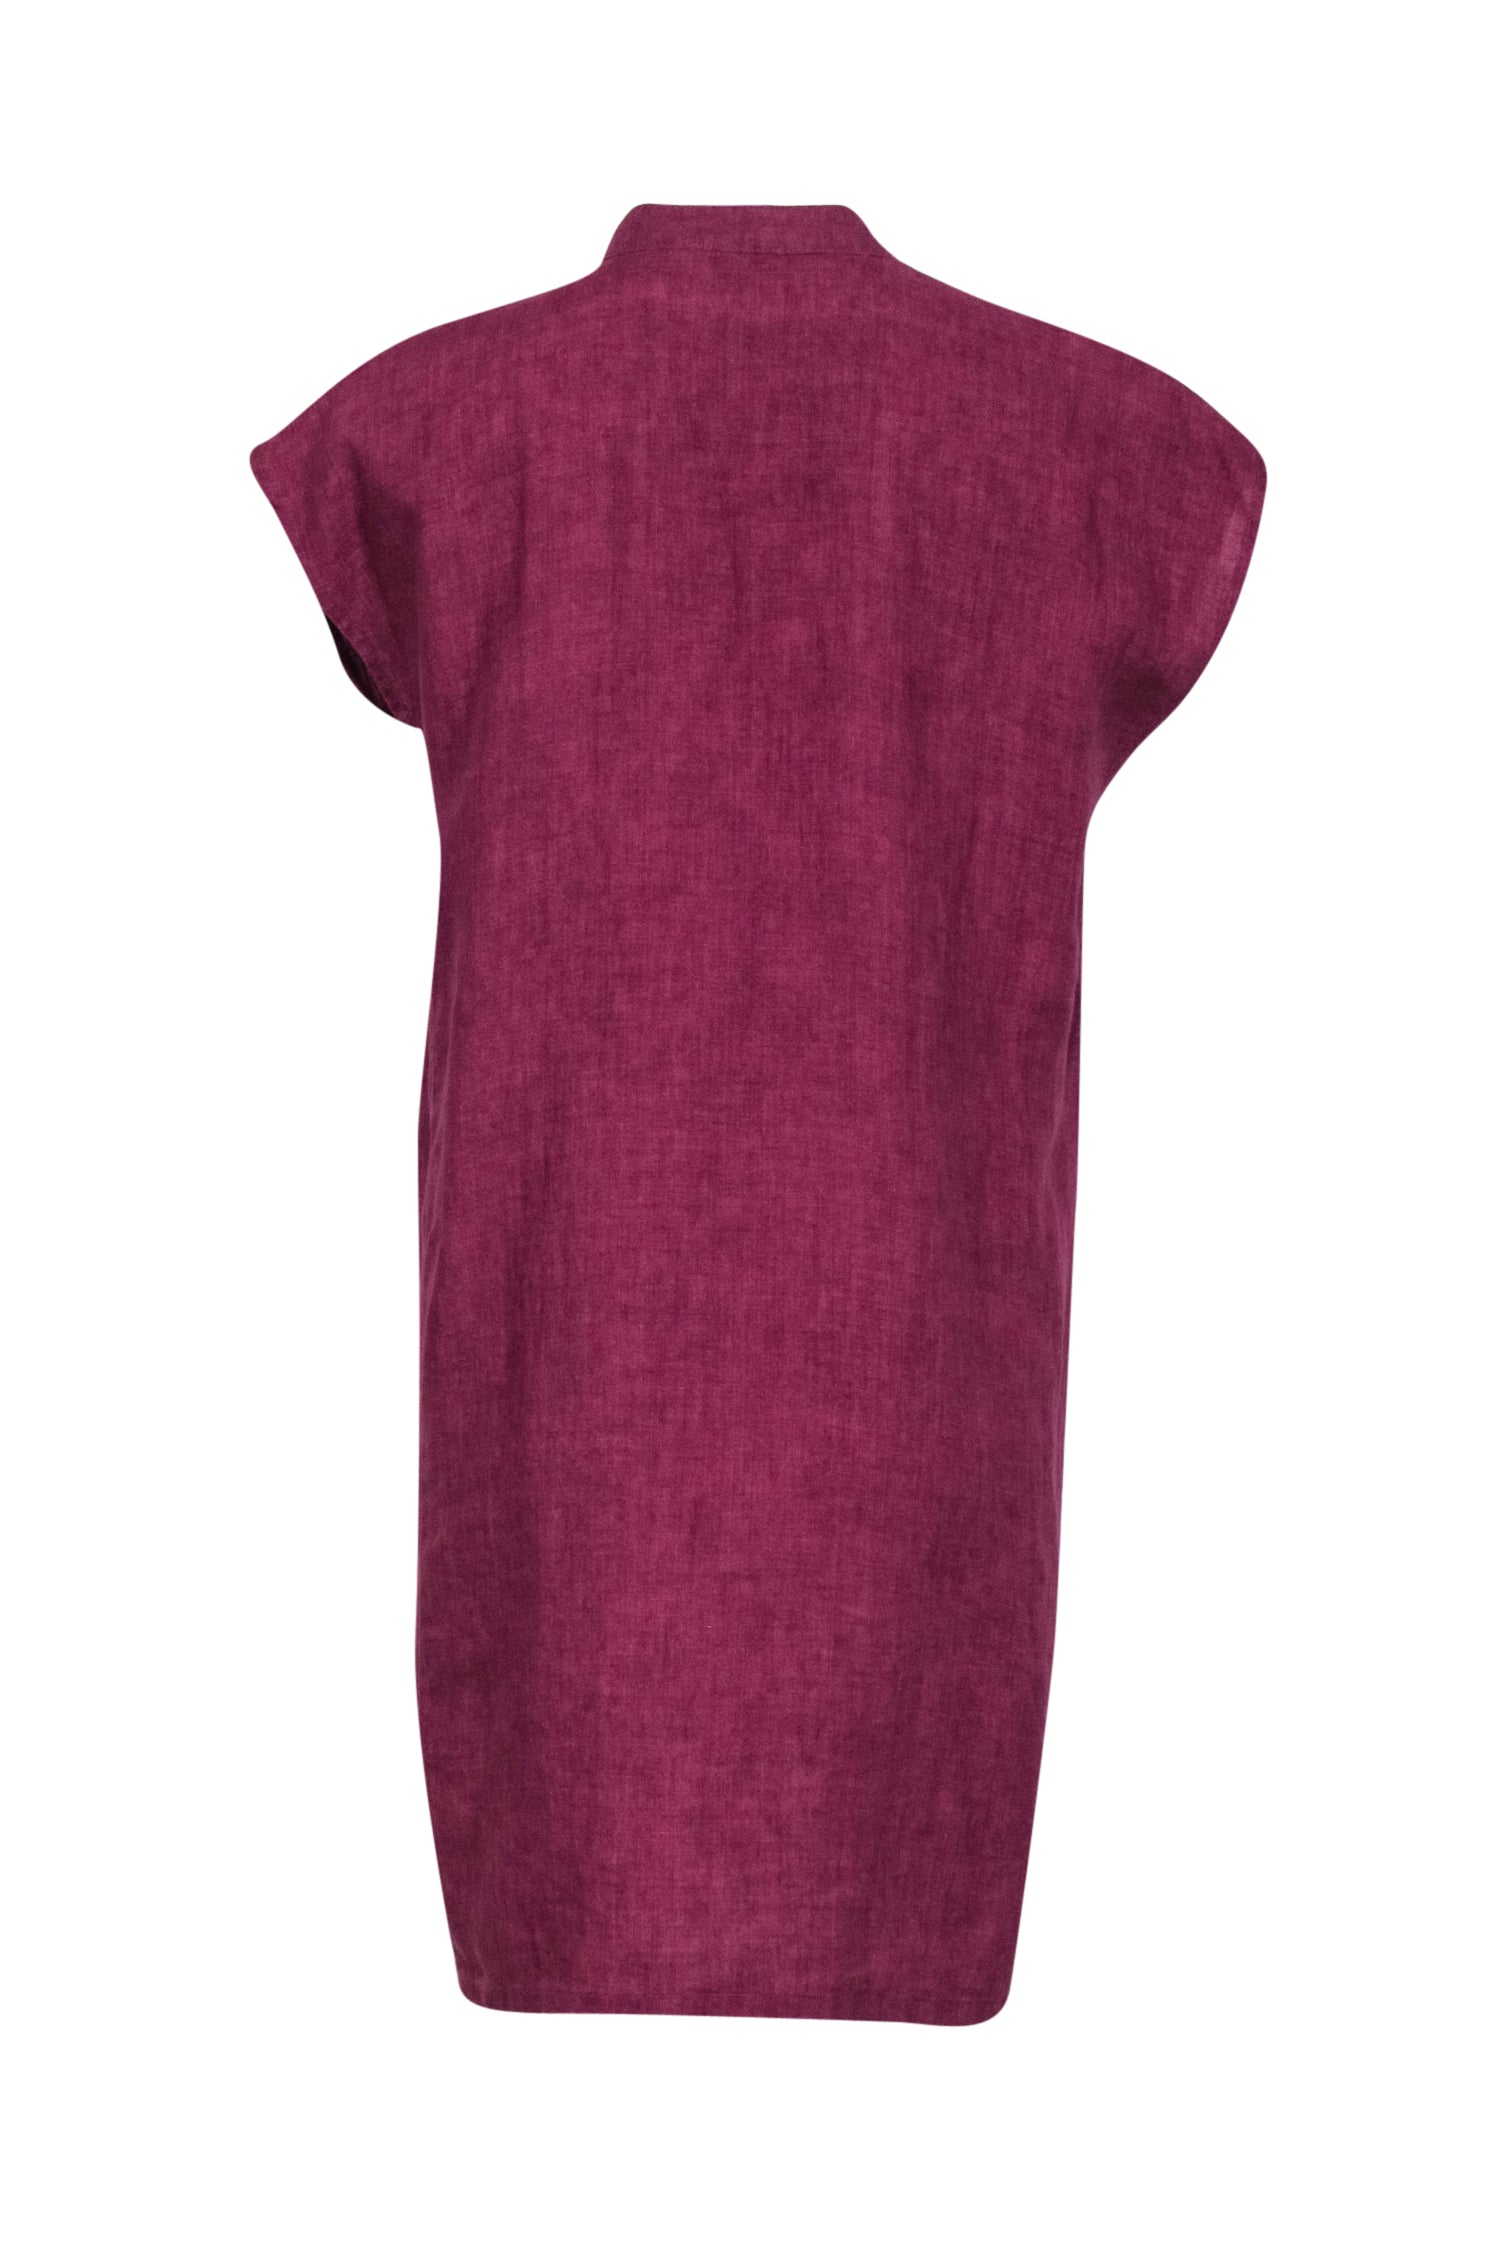 Eileen Fisher - Purple Organic Linen Button Front Dress Sz S